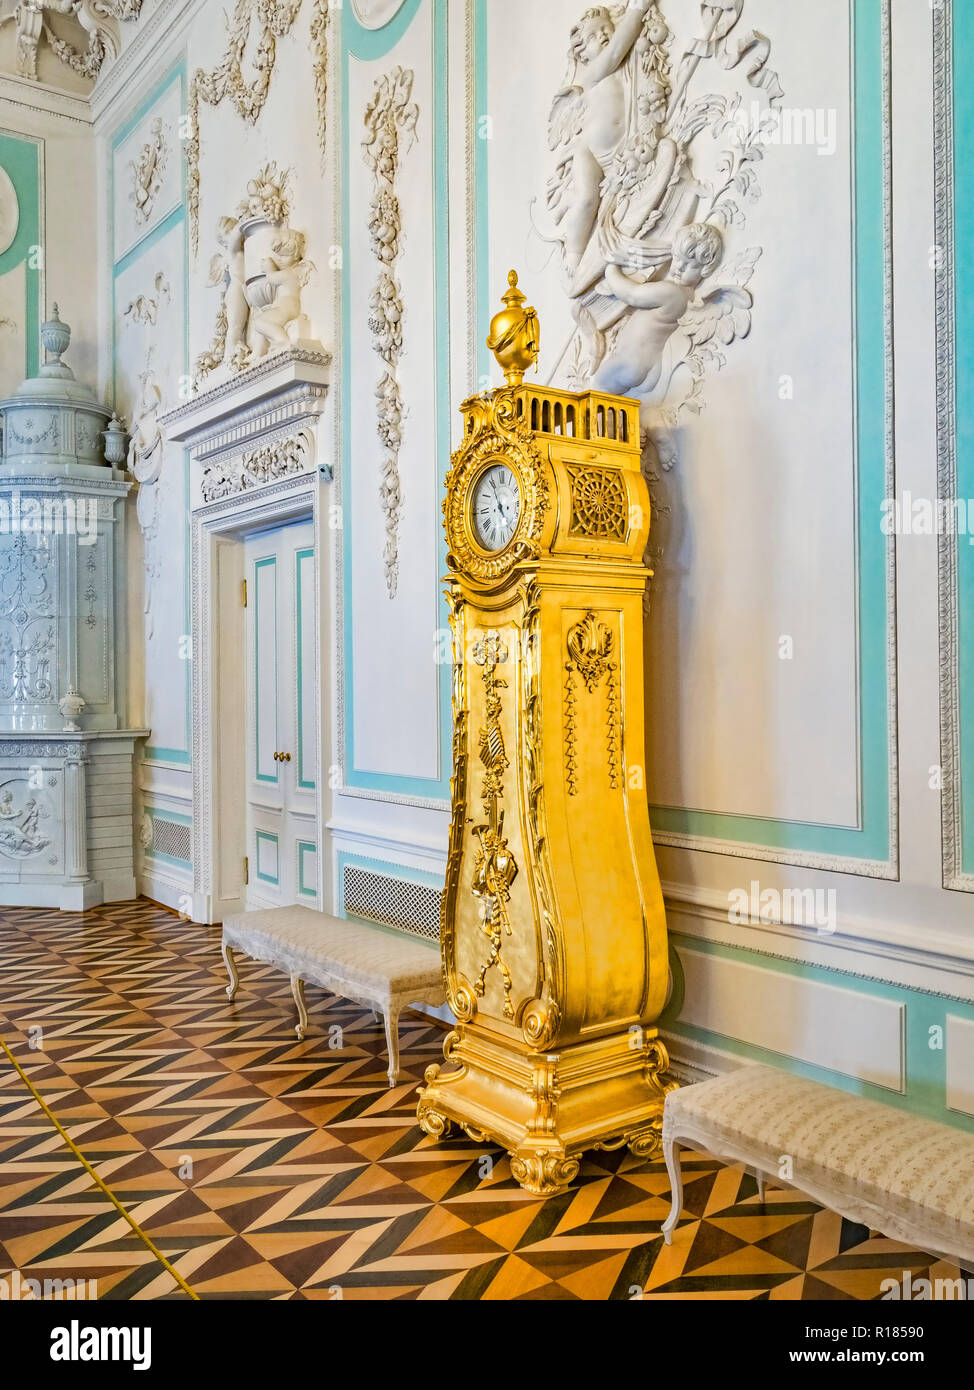 18 de septiembre de 2018: San Petersburgo, Rusia - reloj dorado en el Gran Palacio Peterhof. Foto de stock